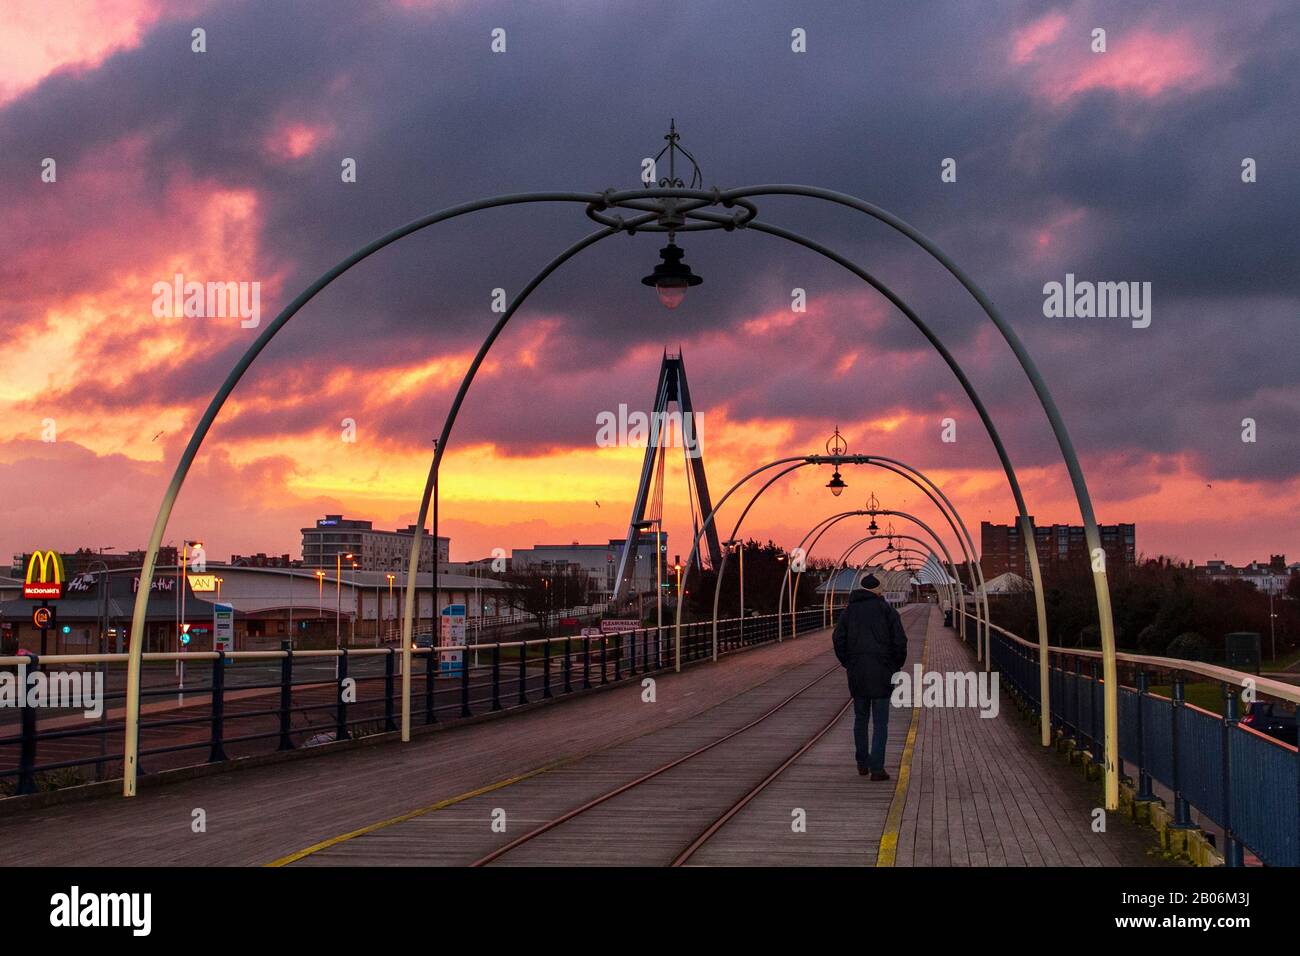 Lever du soleil à Southport, Merseyside. Fév 2020. Météo au Royaume-Uni ; ciel rouge flamboyant le matin, avertissement du système de tempête du marin. Lever du soleil et ciel orange au-dessus des randonneurs sur la jetée de Southport à l'aube. Banque D'Images